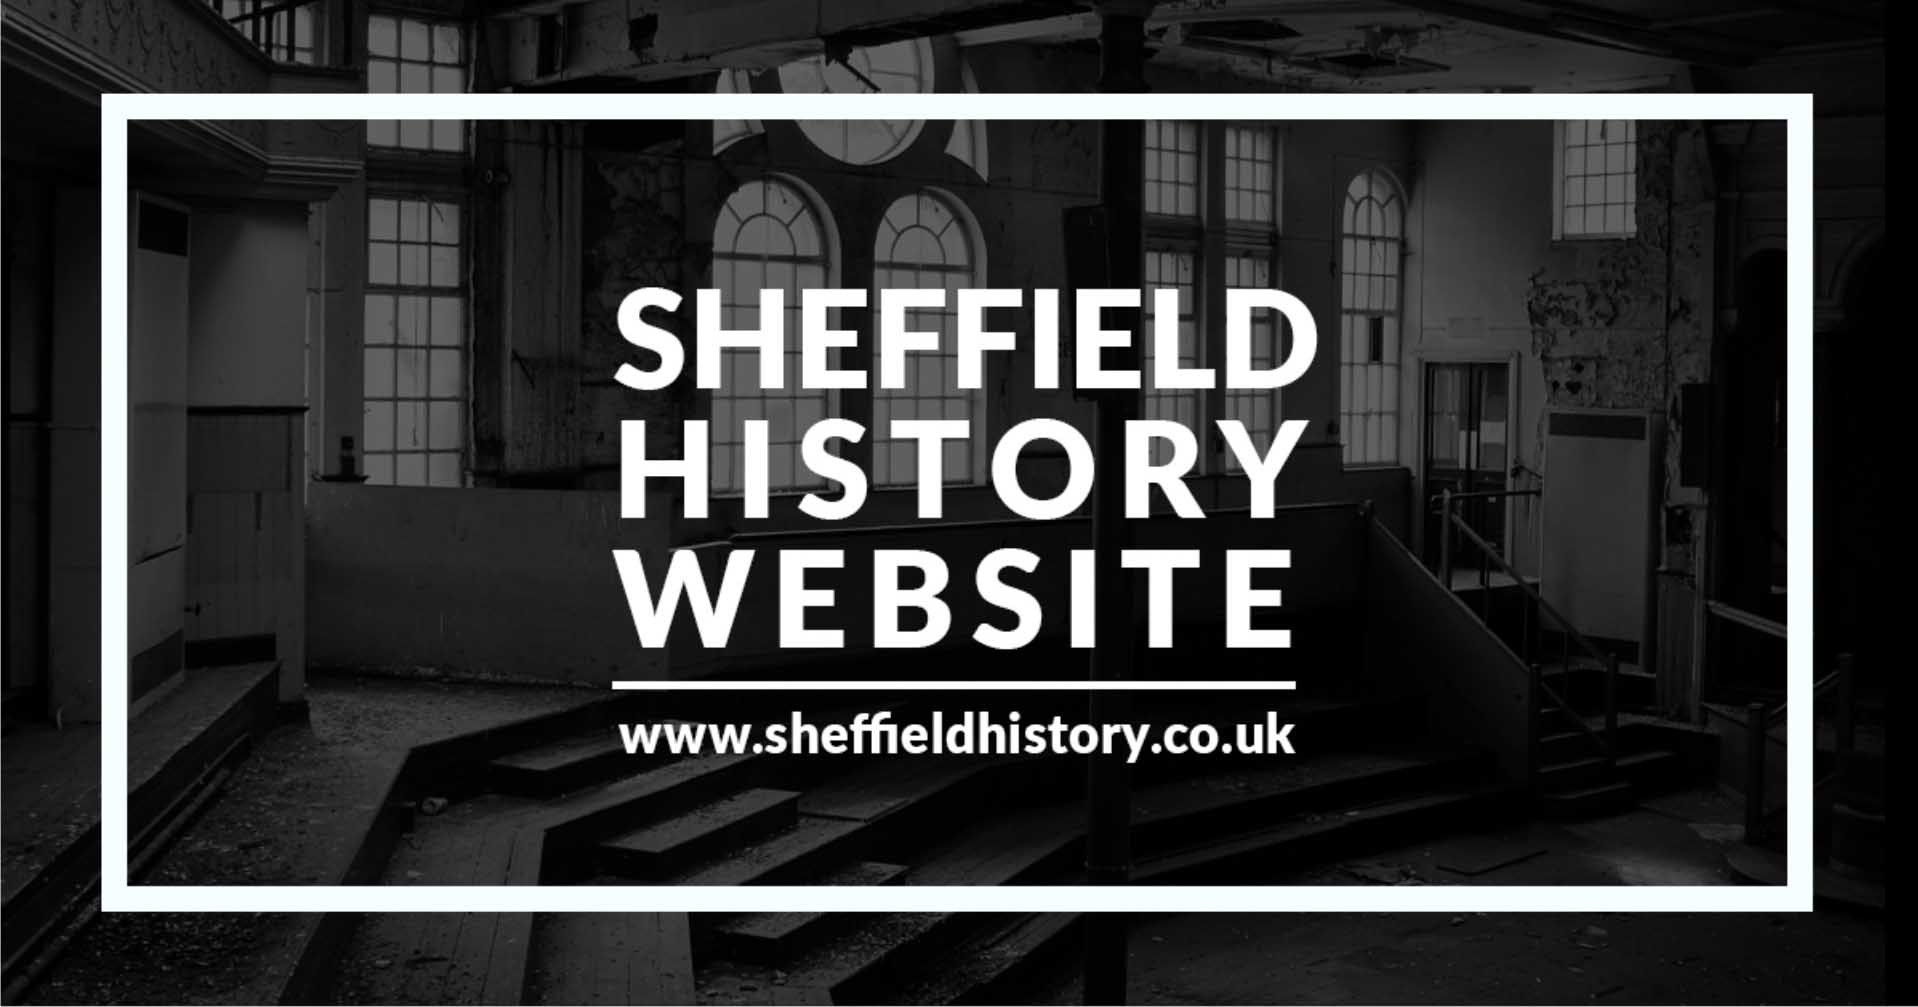 www.sheffieldhistory.co.uk